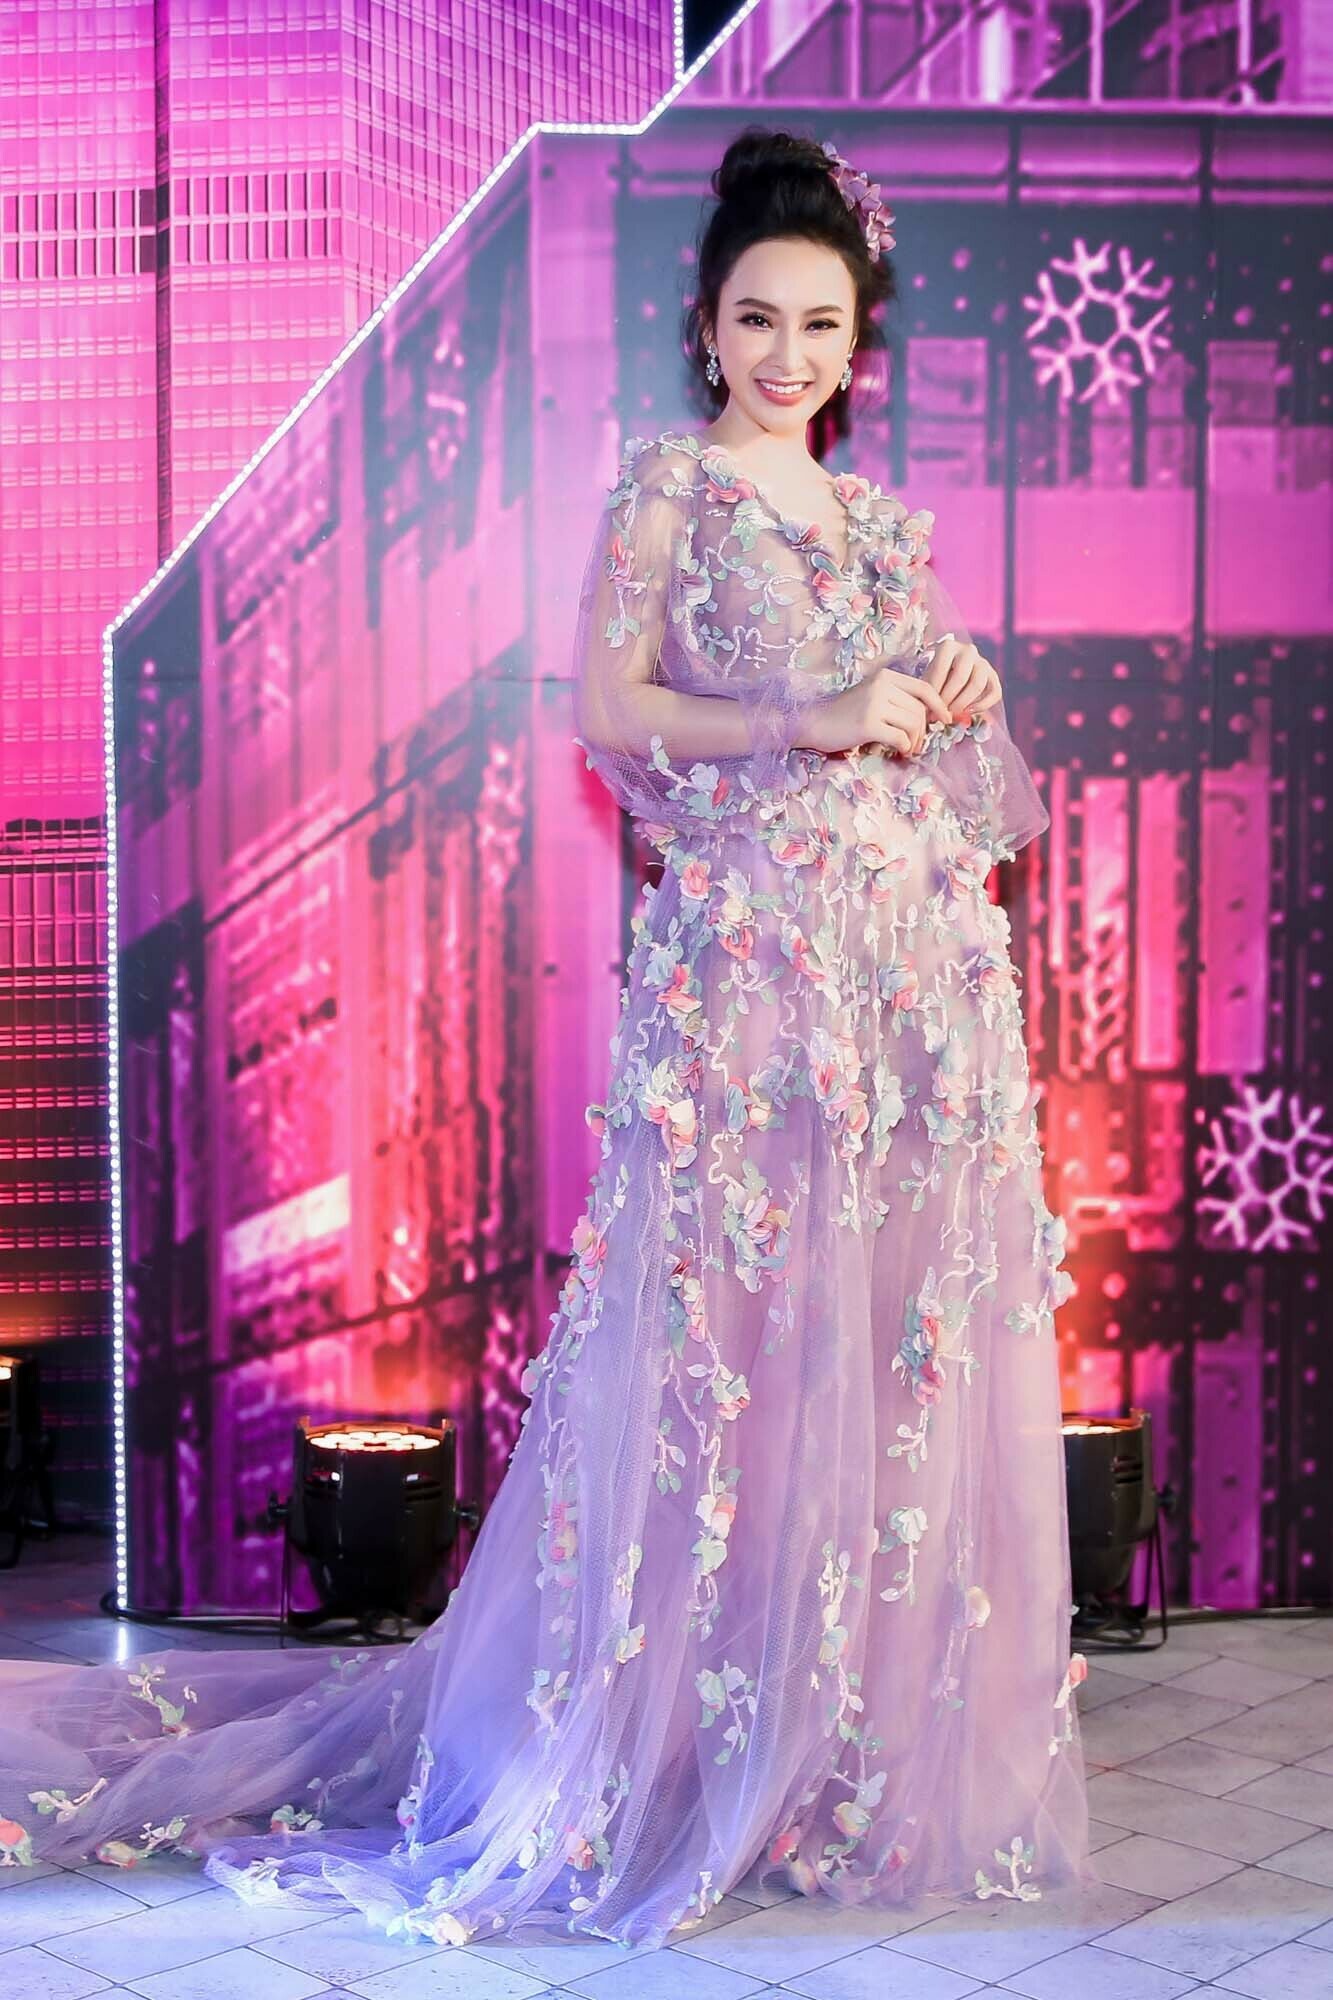 Dù sexy hay kín đáo, Angela Phương Trinh vẫn luôn được xem là “nữ hoàng thời trang”